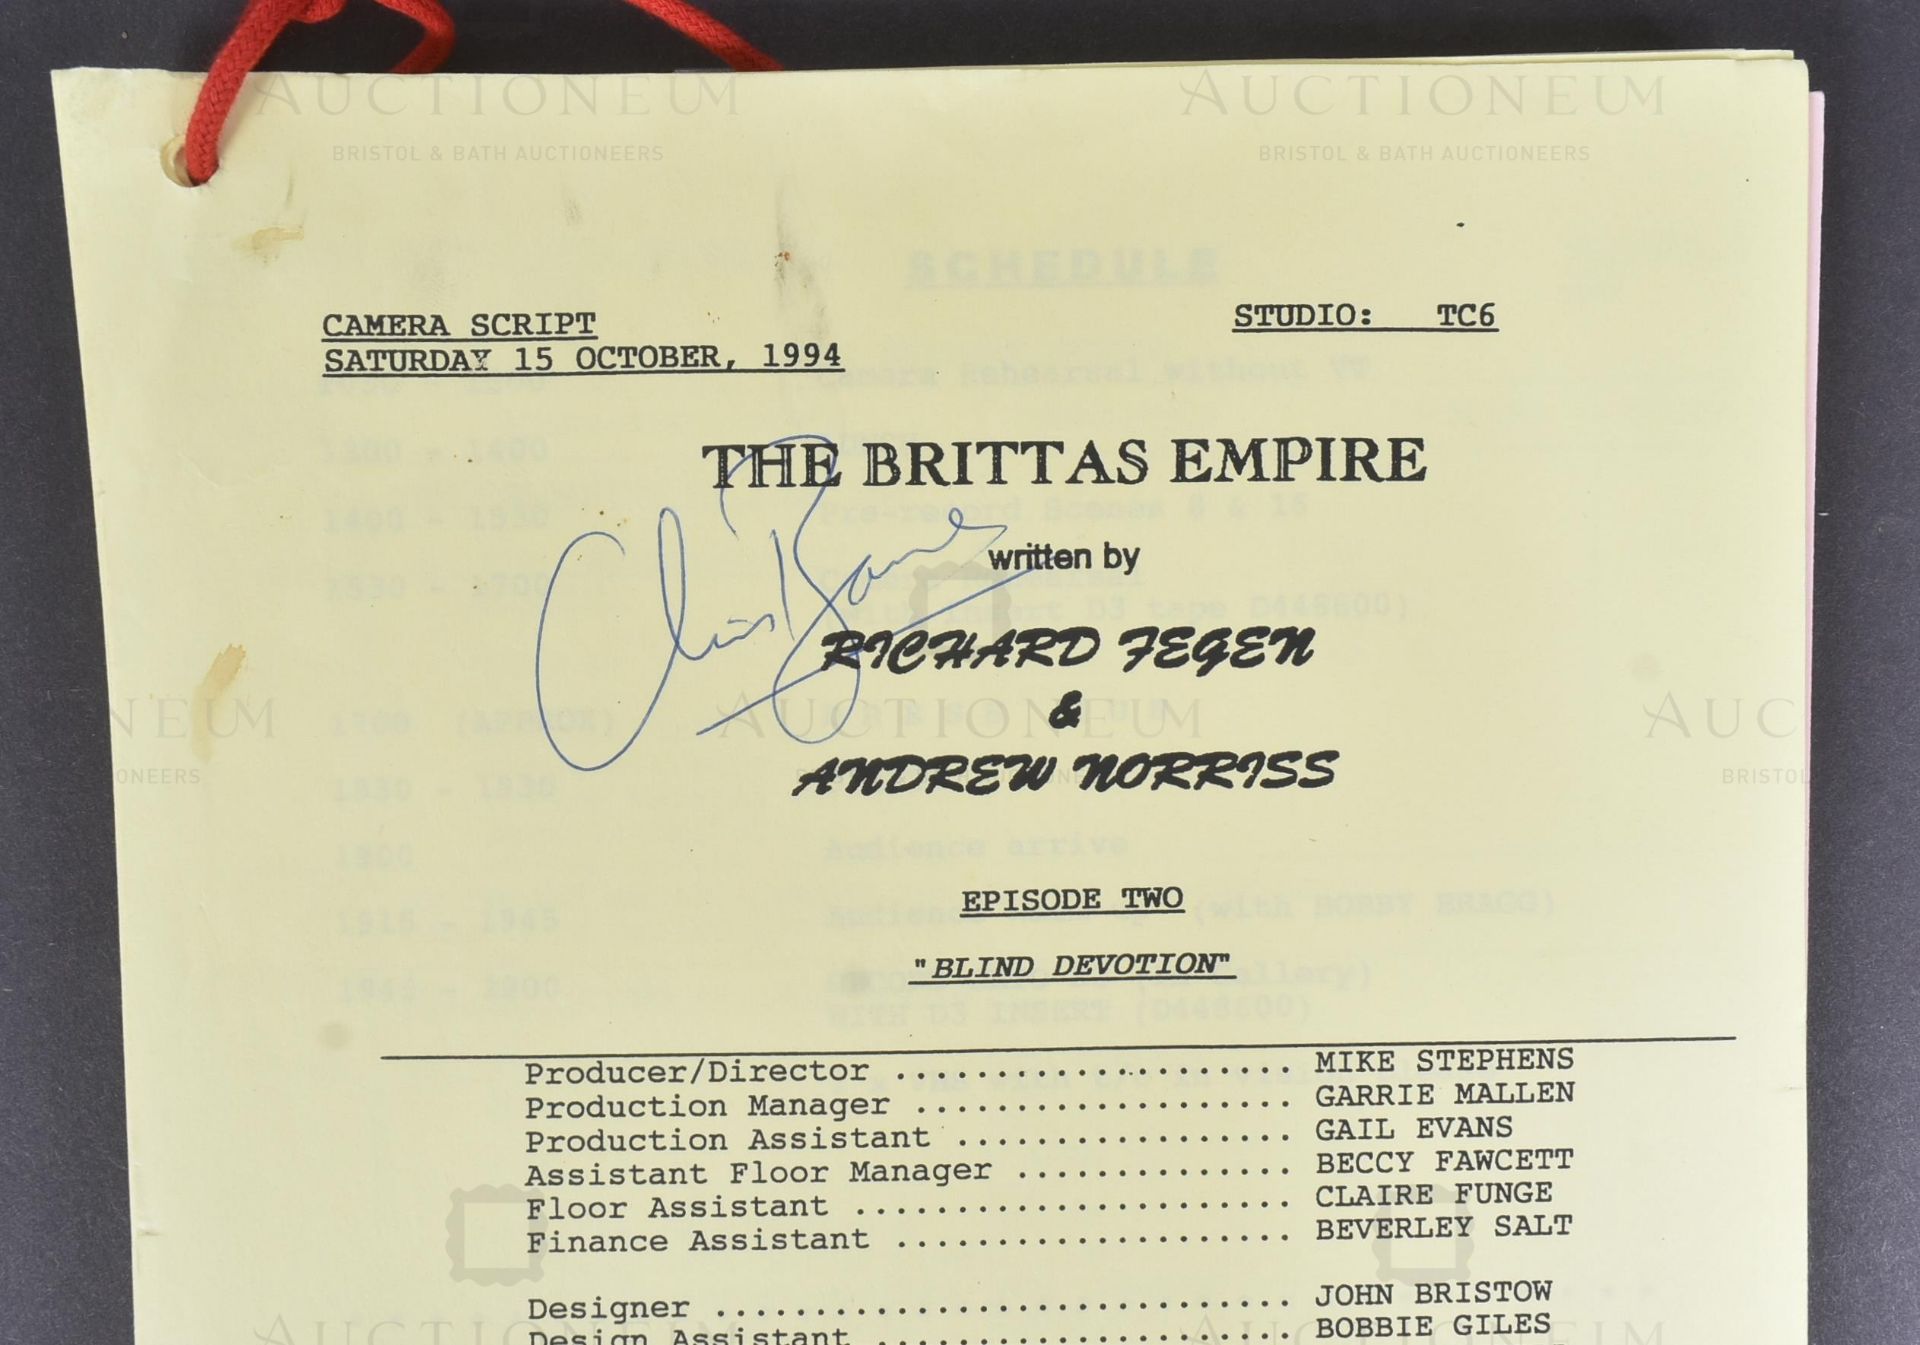 THE BRITTAS EMPIRE (BBC SITCOM) - ORIGINAL CAMERA SCRIPT - Image 2 of 8